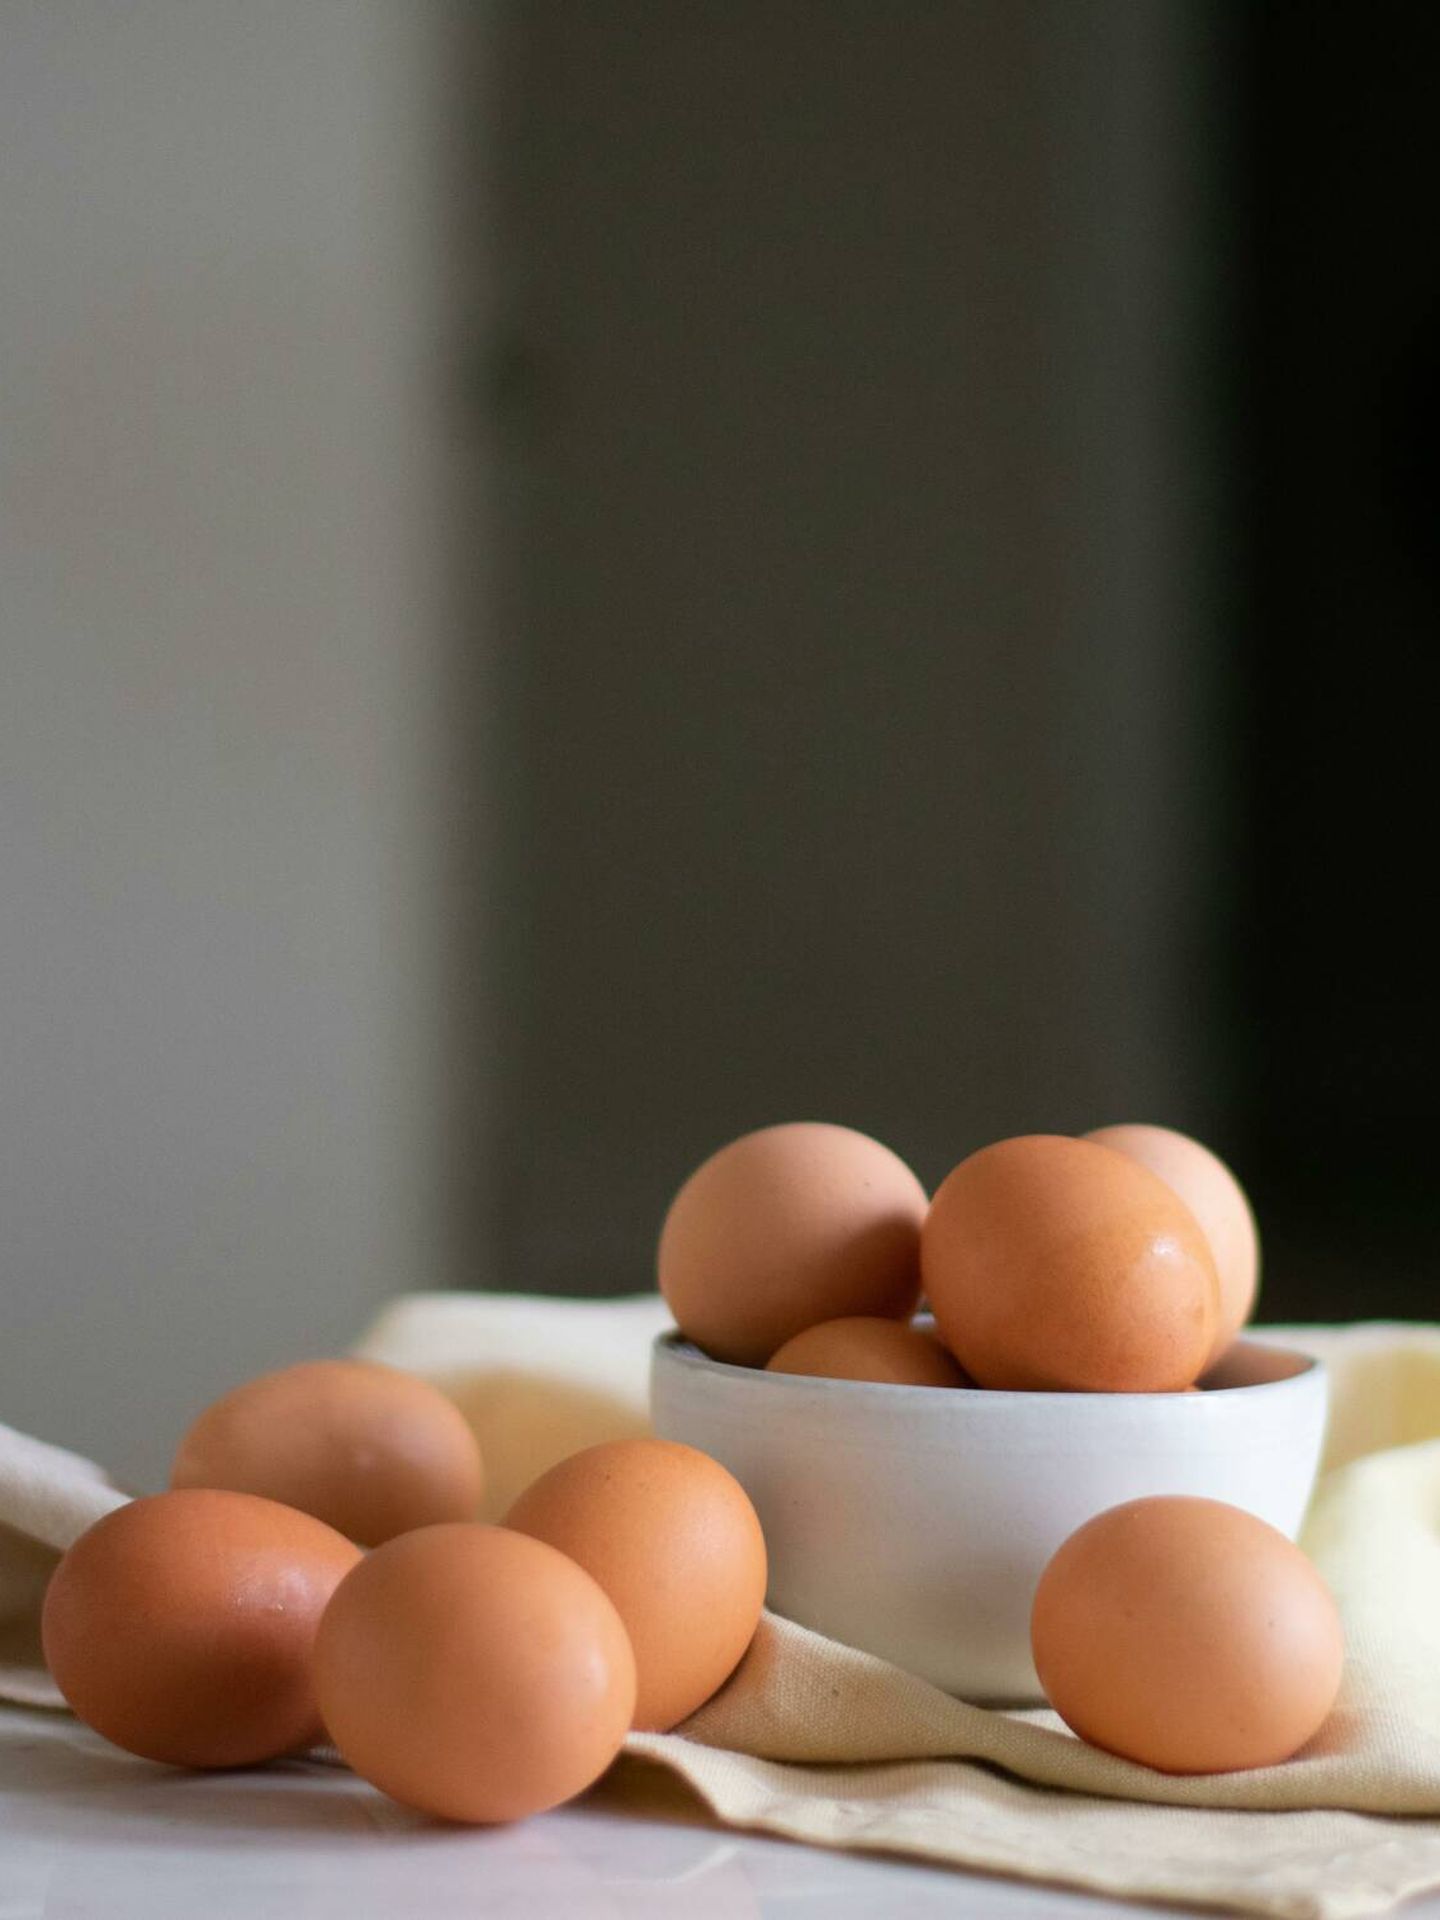 Huevos, fuente natural de proteína. (Pexels/Andie Cumber)